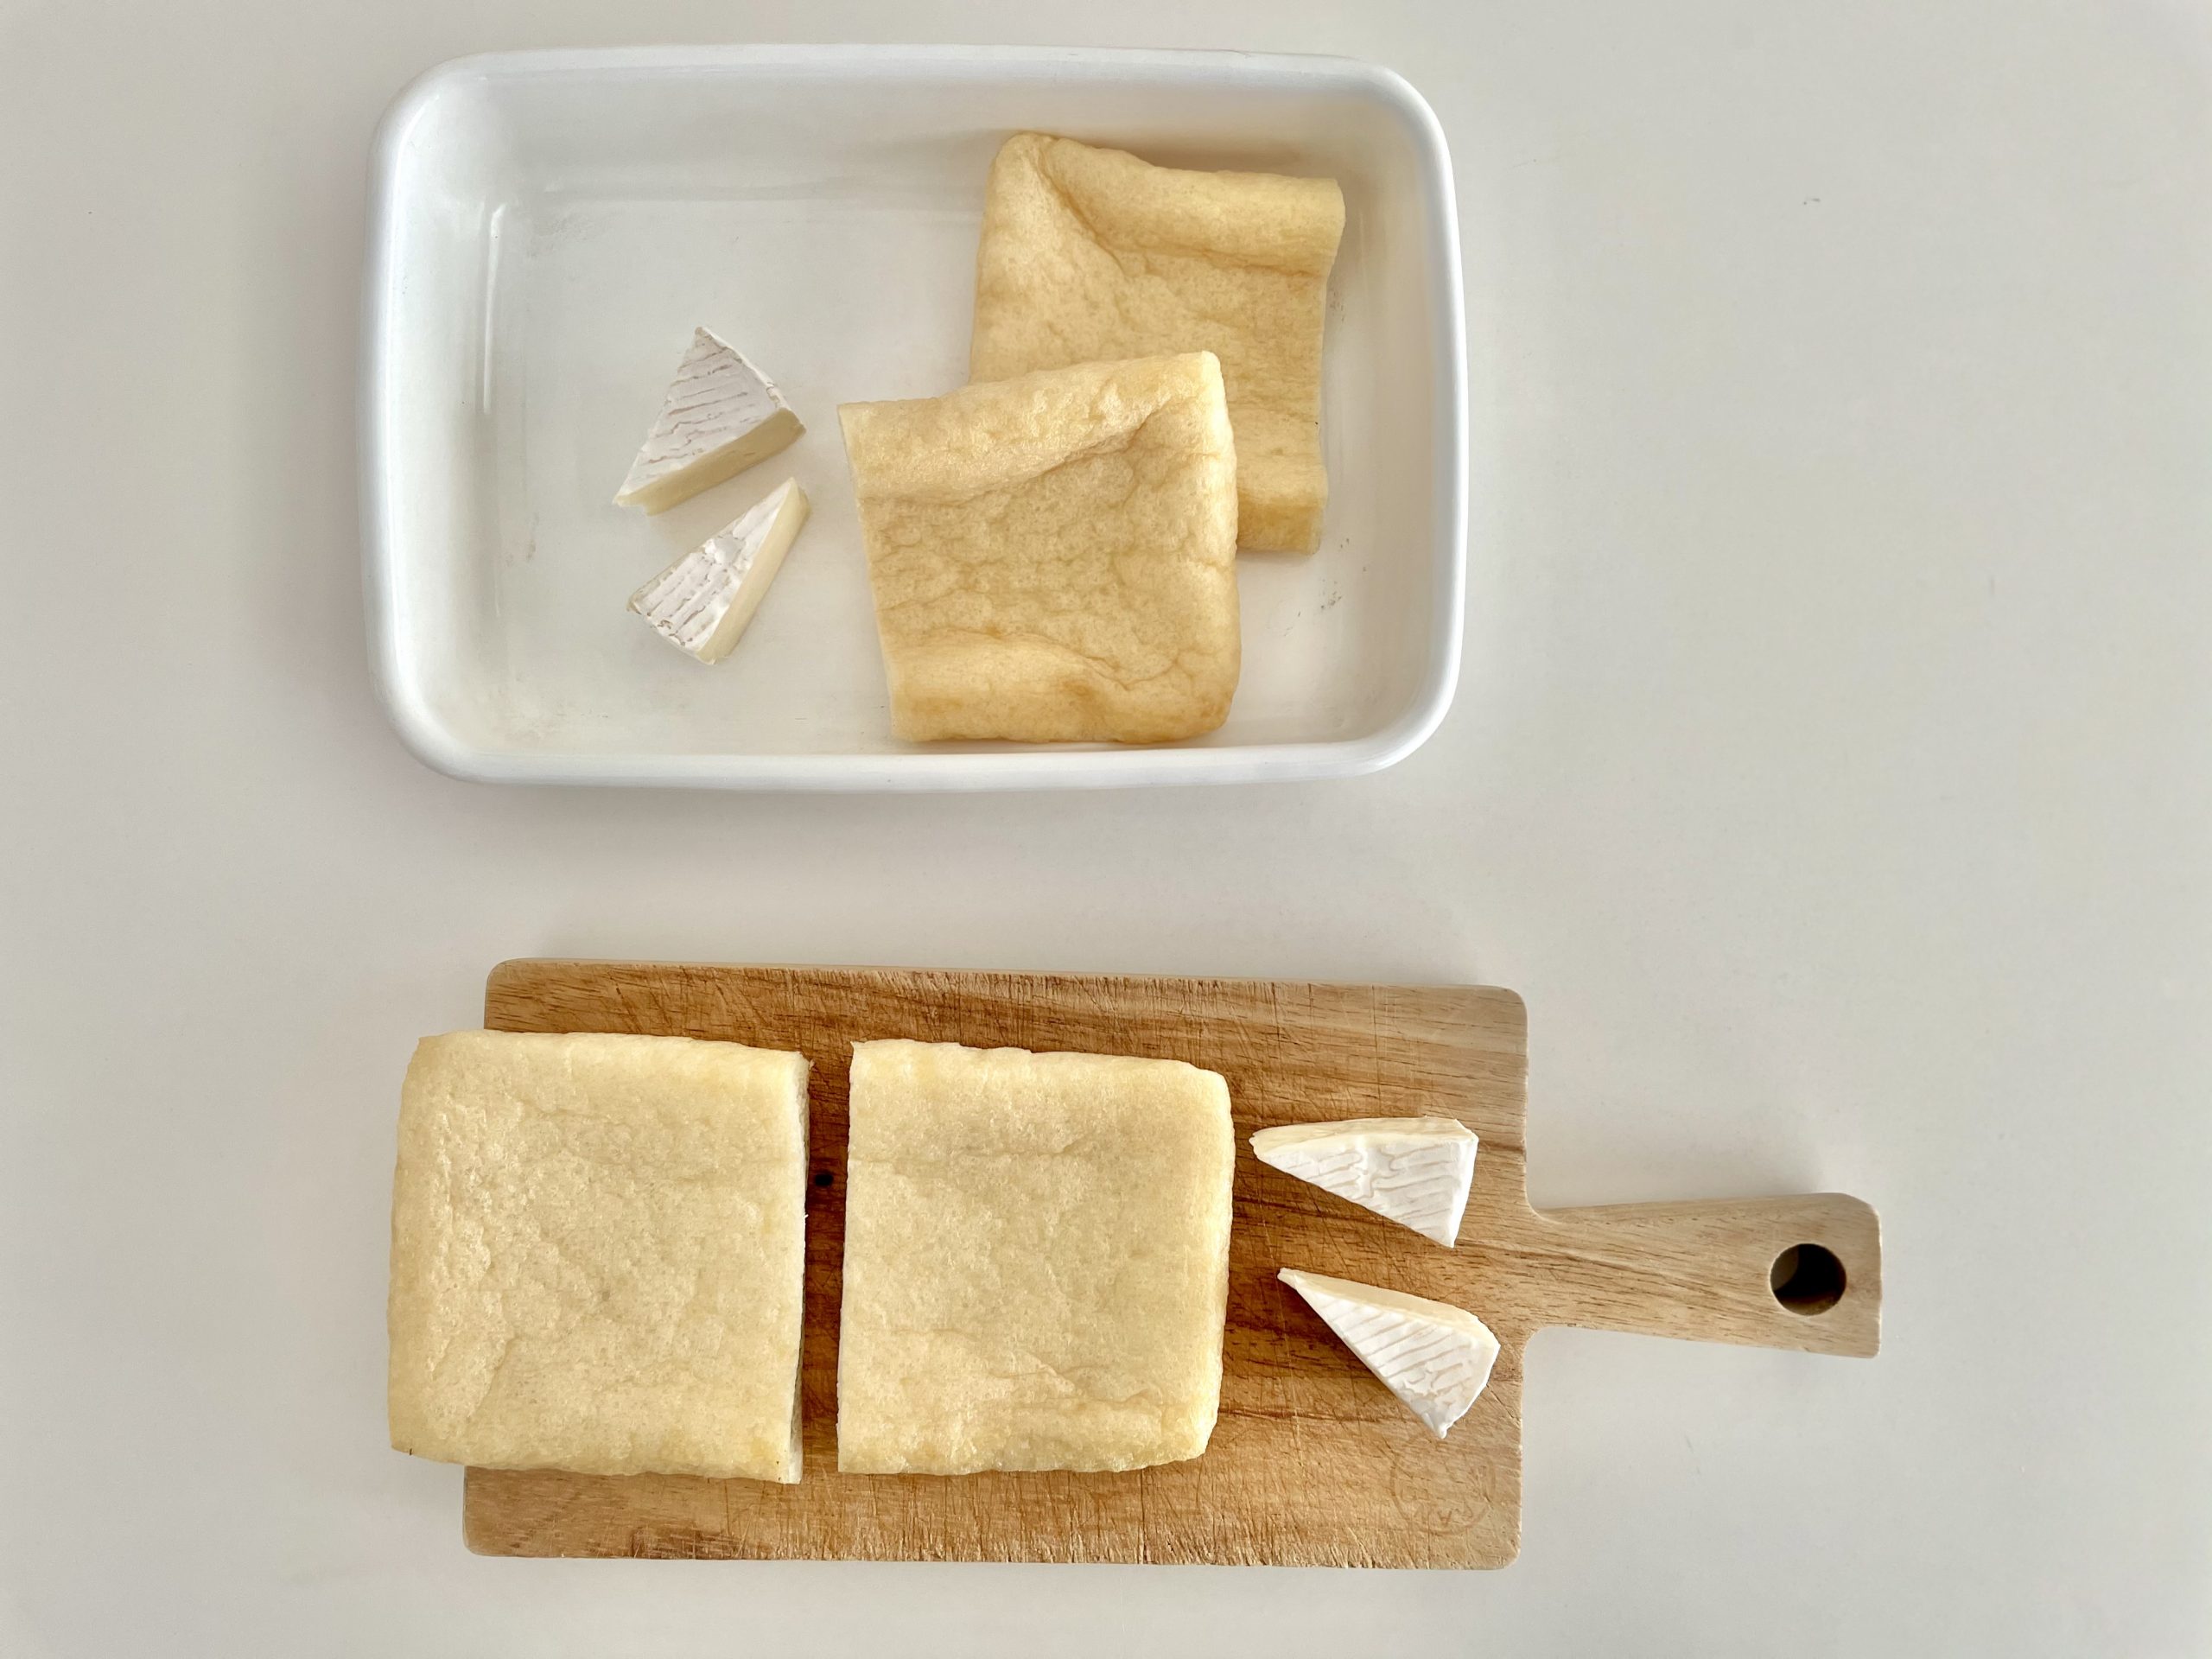 油揚げを横向きにまな板の上に置き、縦に半分に切る。<br />
カマンベールチーズも半分に切る。